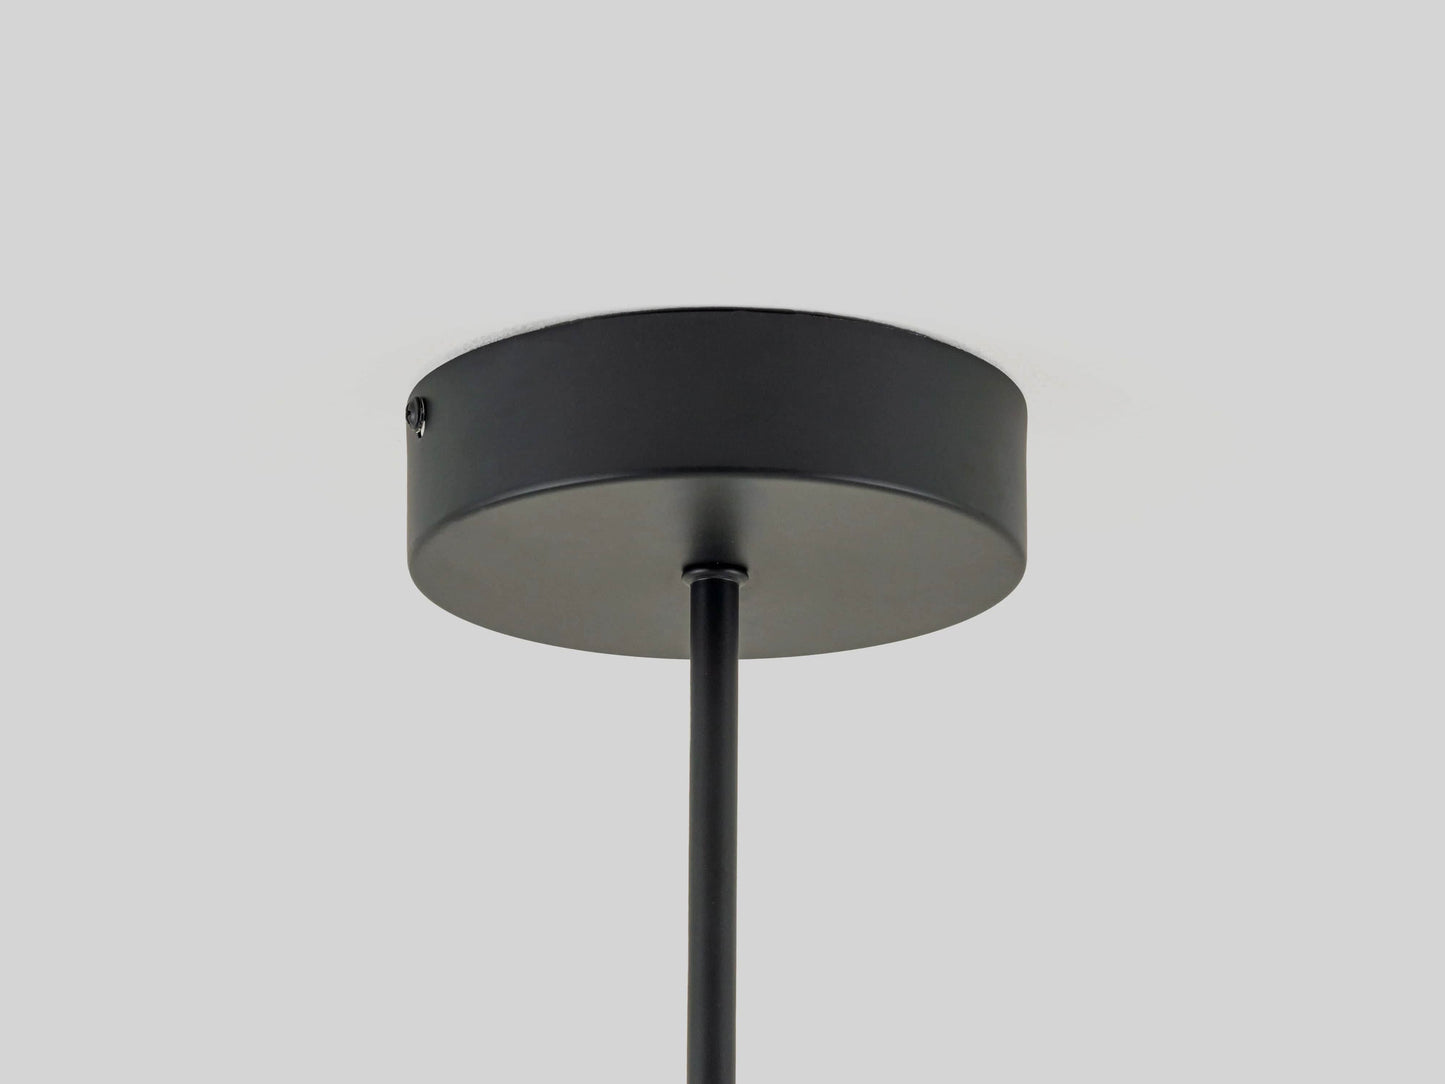 Charcoal grey sputnik flush ceiling light